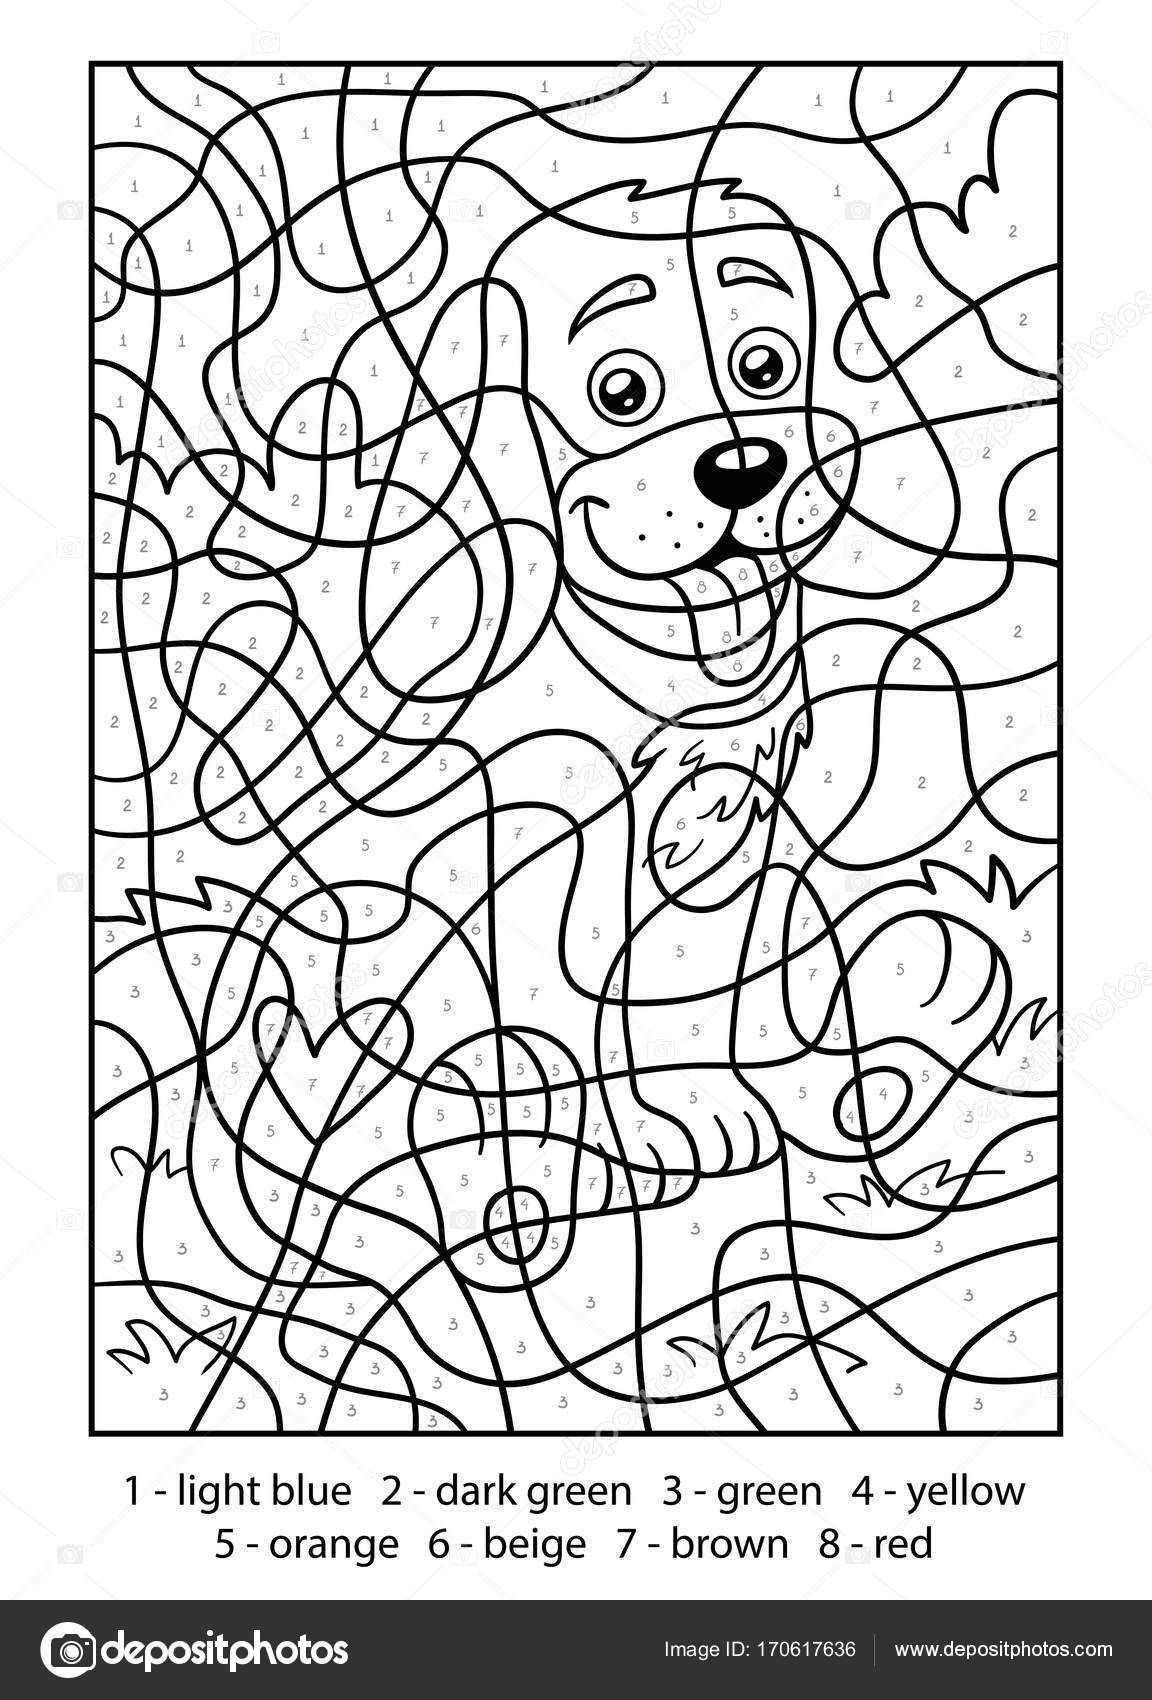 Downloaden Kleuren Op Nummer Hond Stockillustratie Kleurplaten Voor Kinderen Kleuren